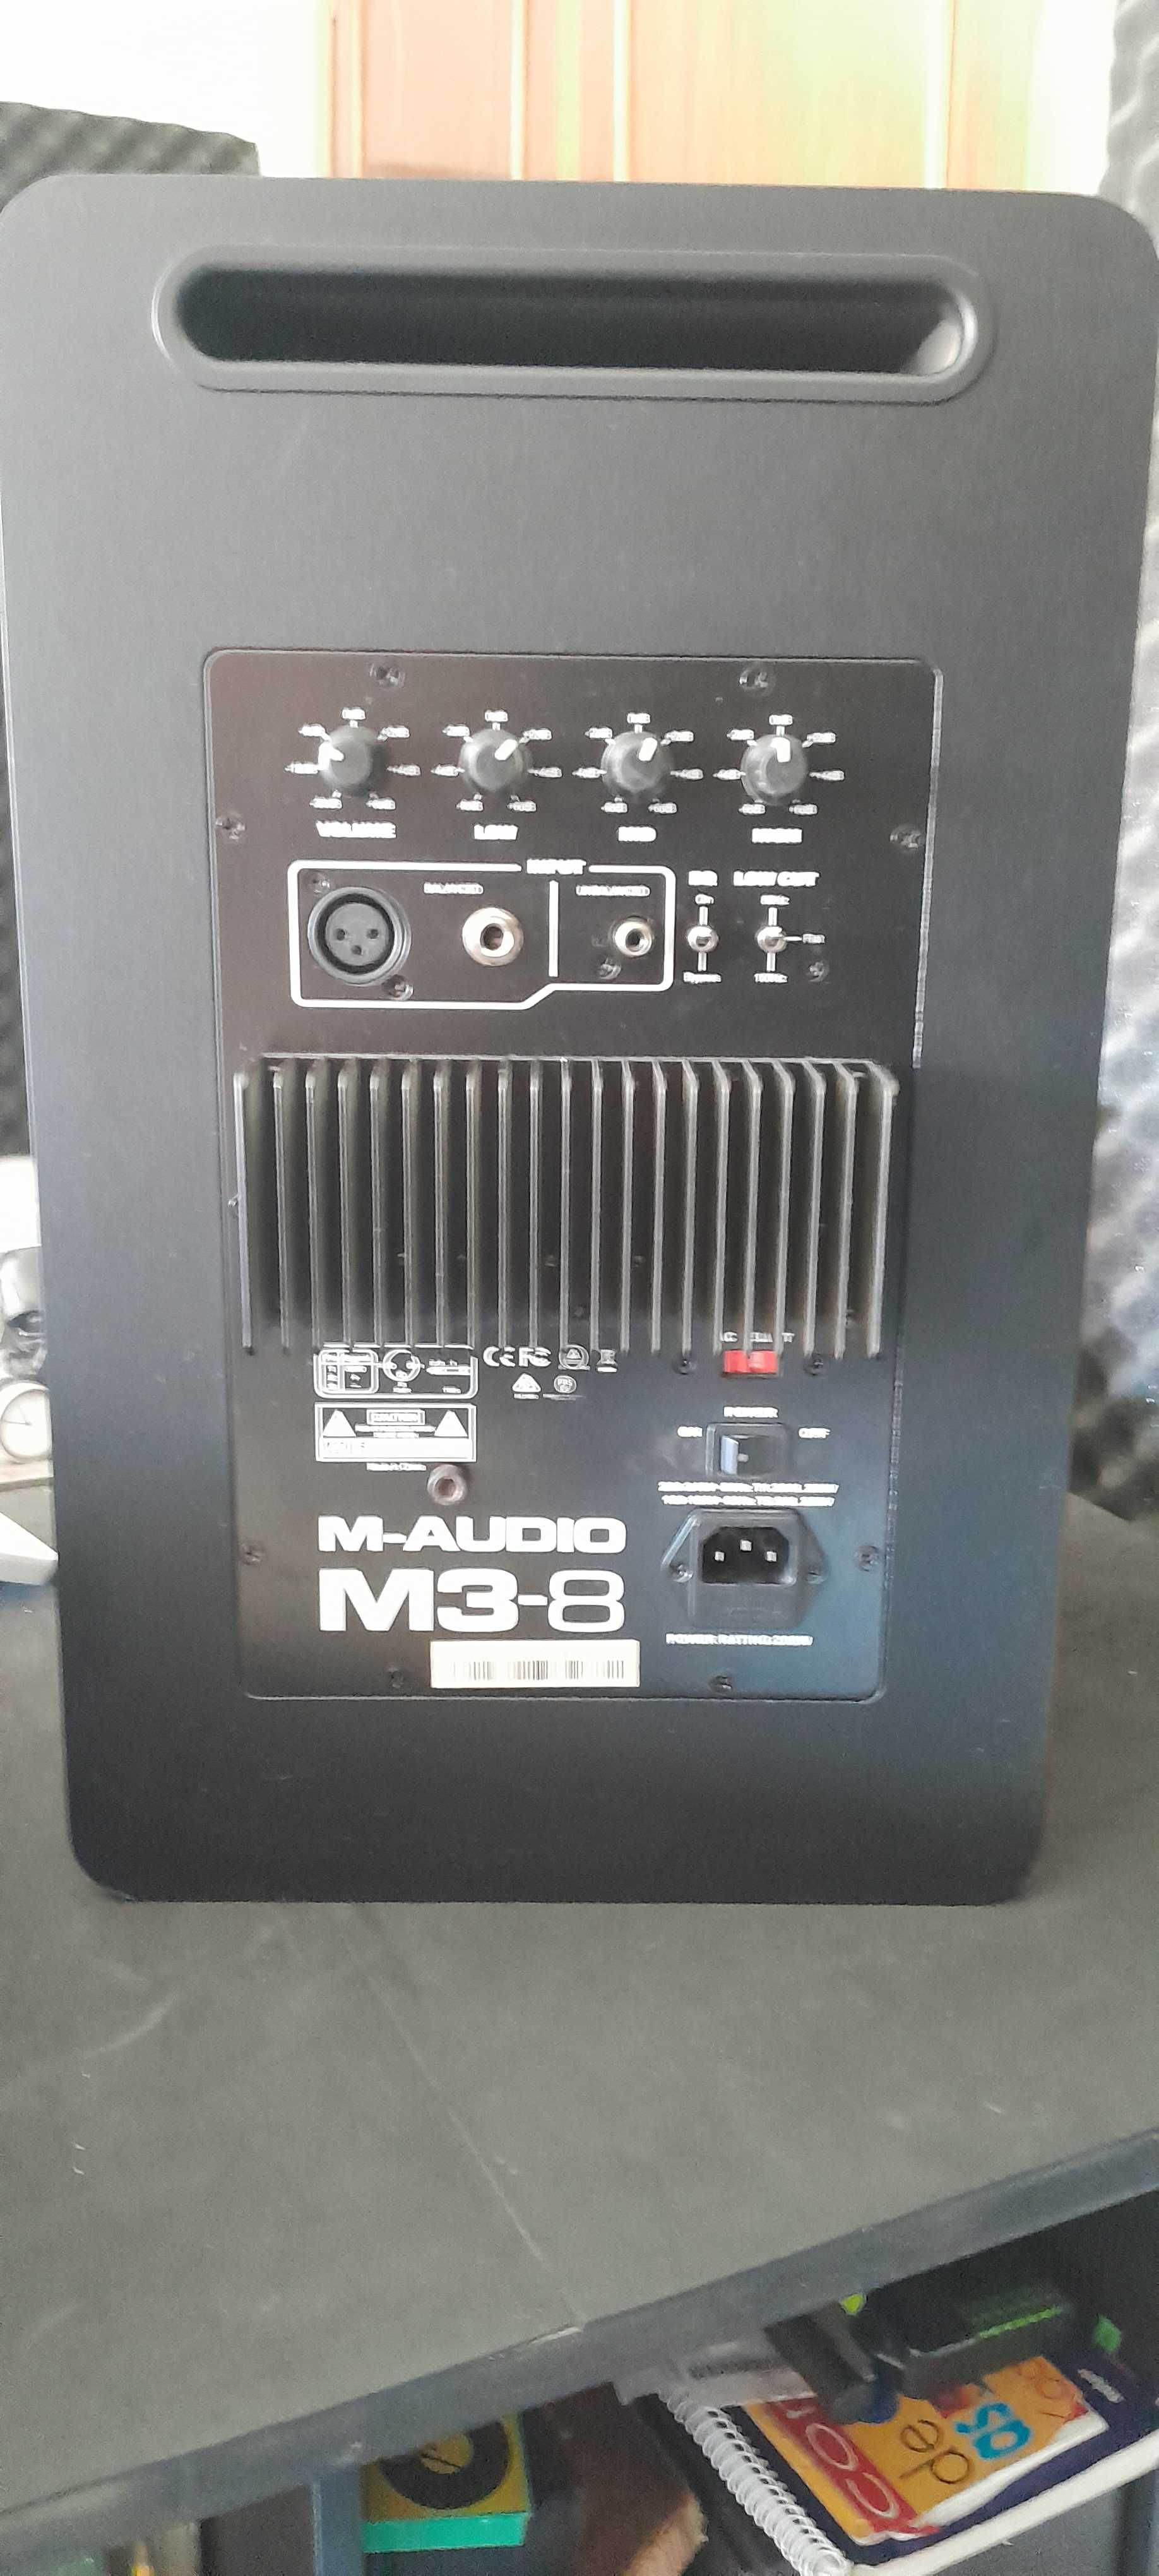 Monitores/estúdio Activos de 3 vias M-AUDIO M3-8"